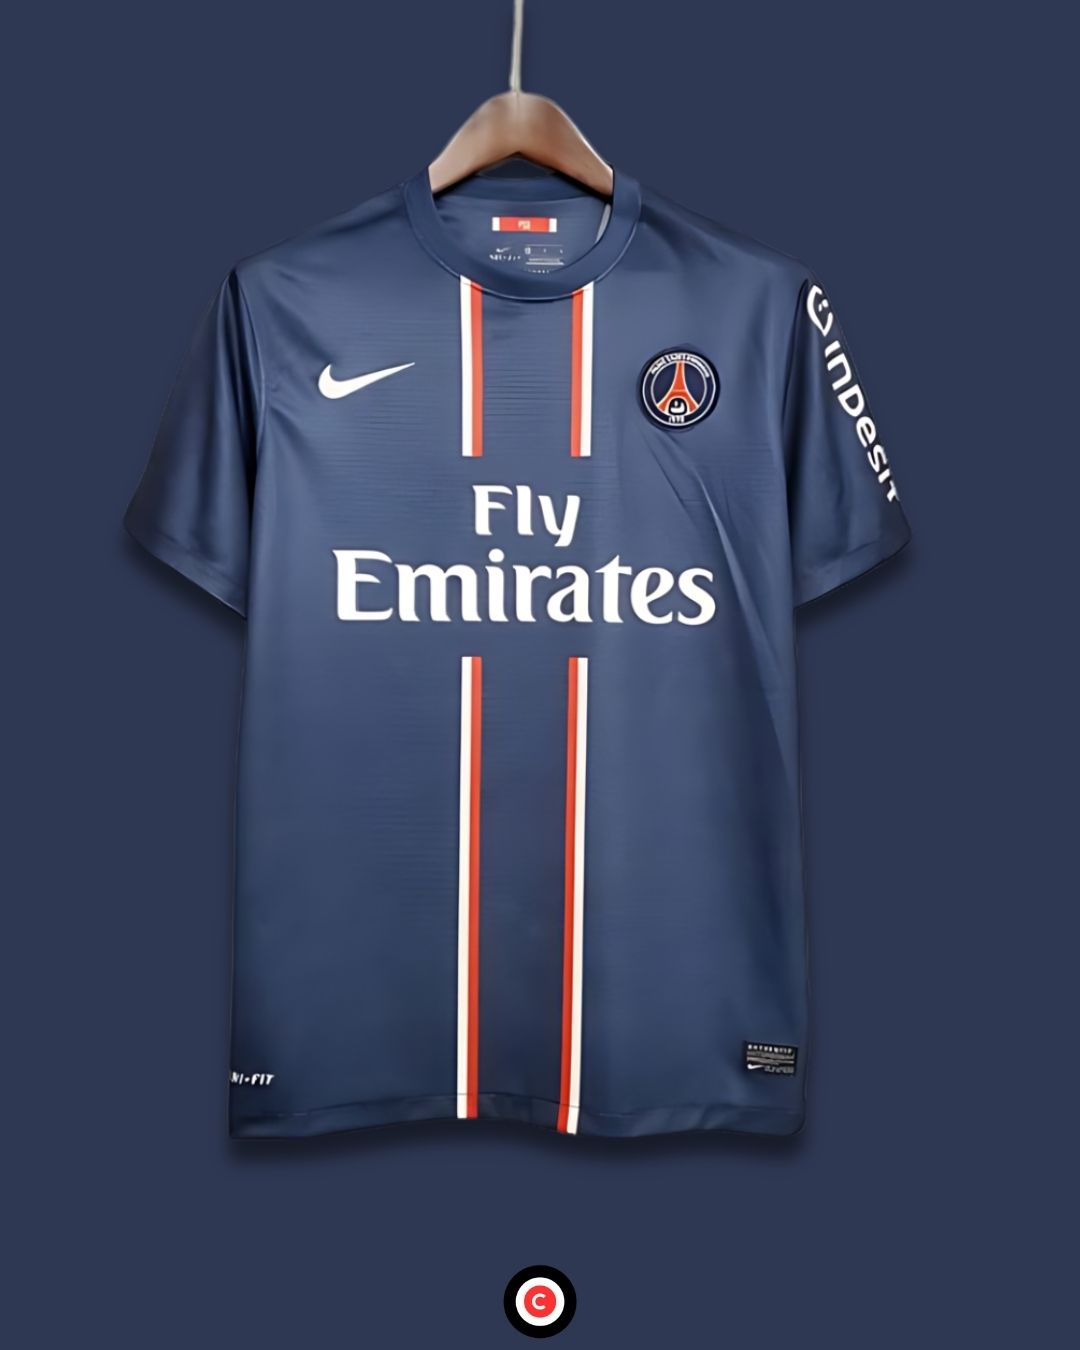 Paris Saint-Germain 12/13 (Home Kit) - Premium  from CatenaccioDesigns - Just €60.99! Shop now at CatenaccioDesigns